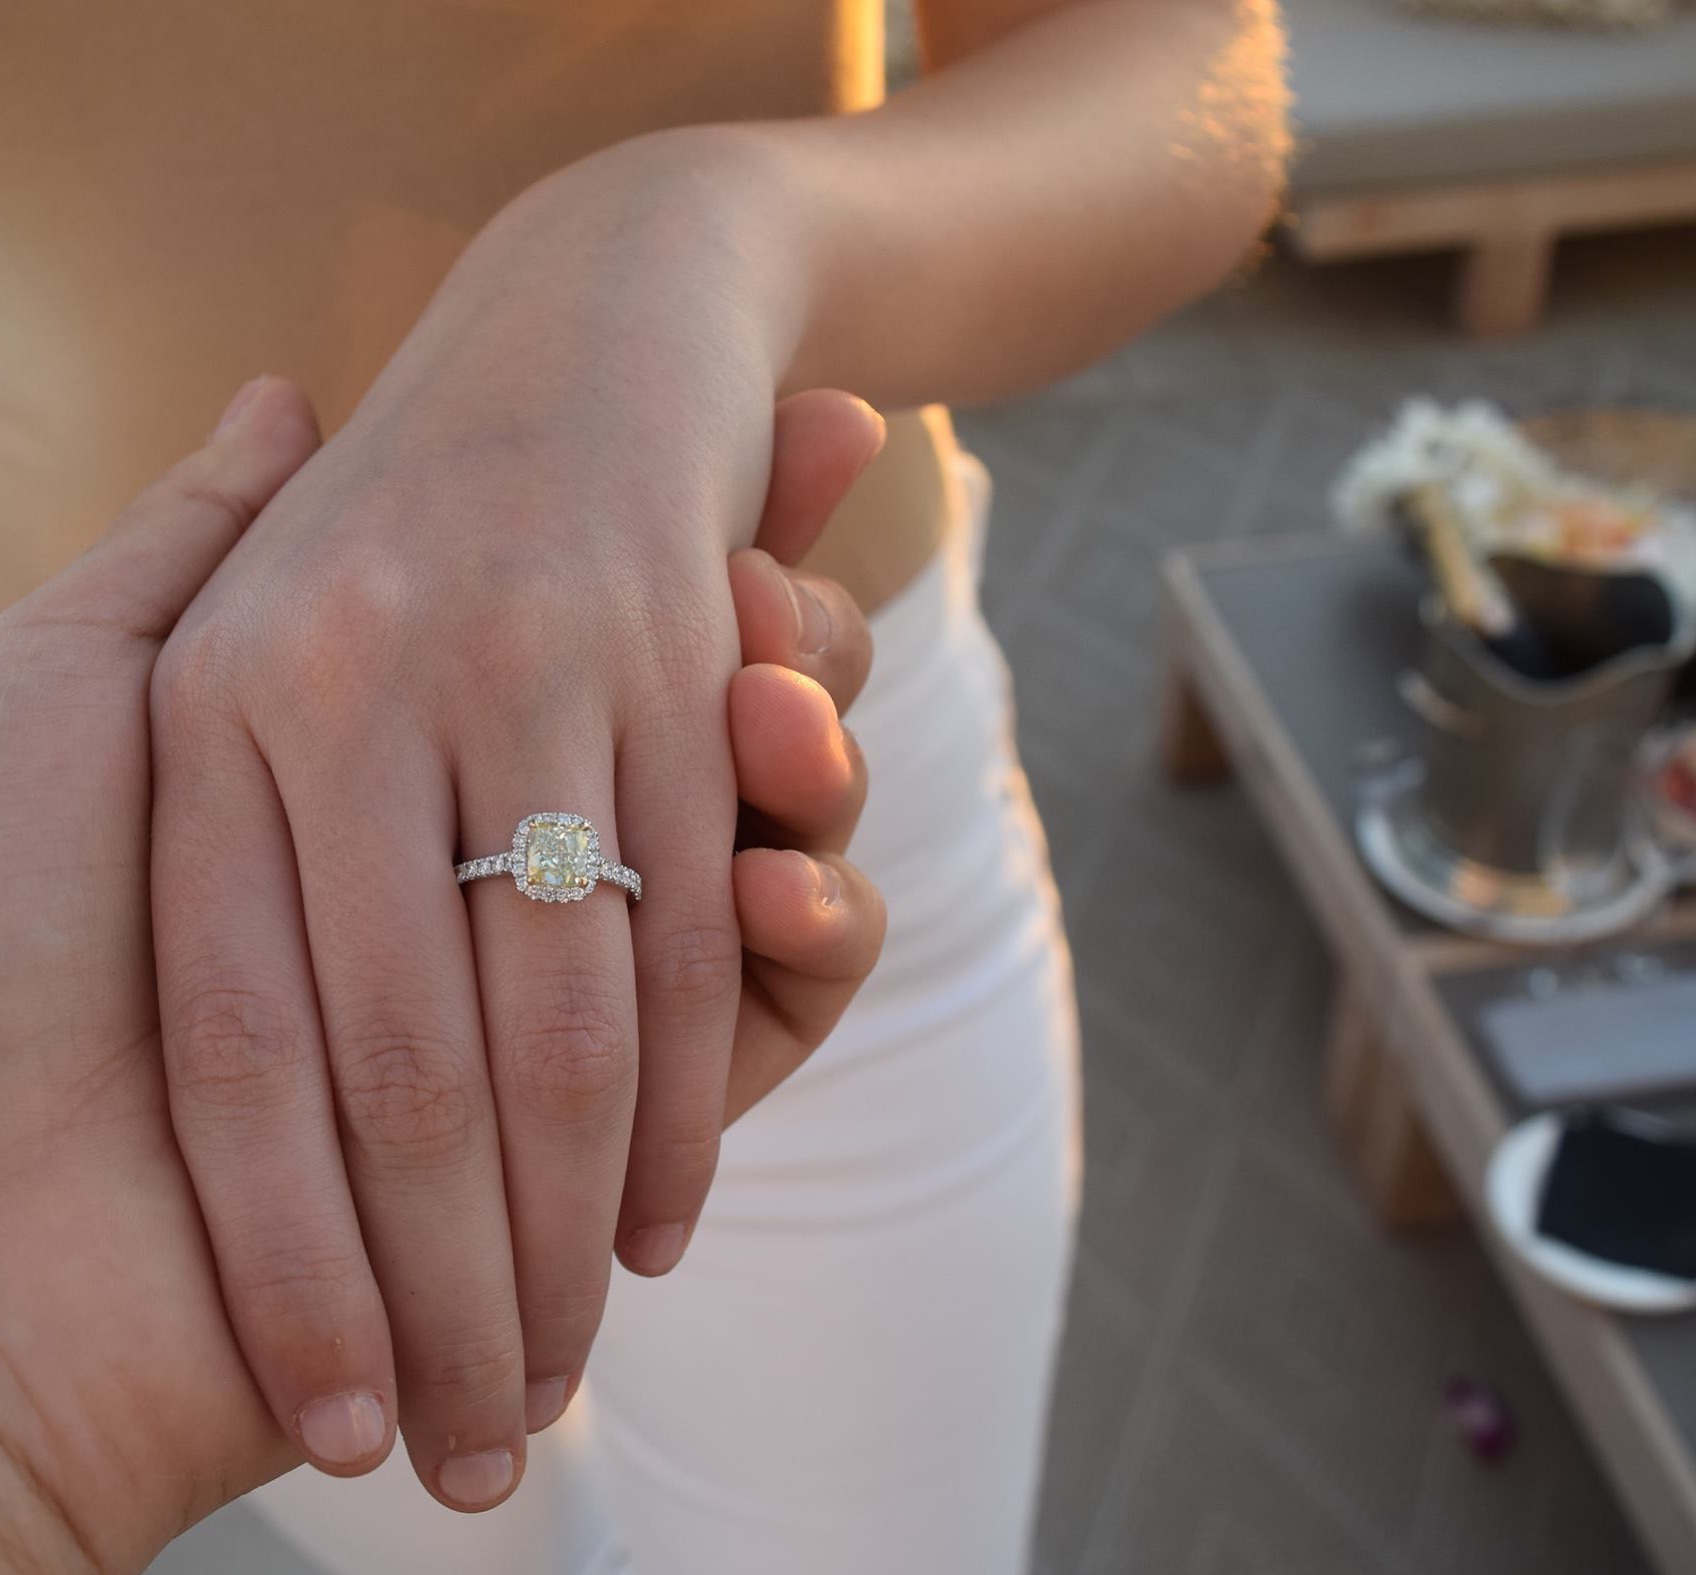 Кольцо когда замужем. Leibish кольцо. Кольцо с бриллиантом для замужества. Кольцо Бриллиантовый брачный брачный. Брак на Бриллианте.